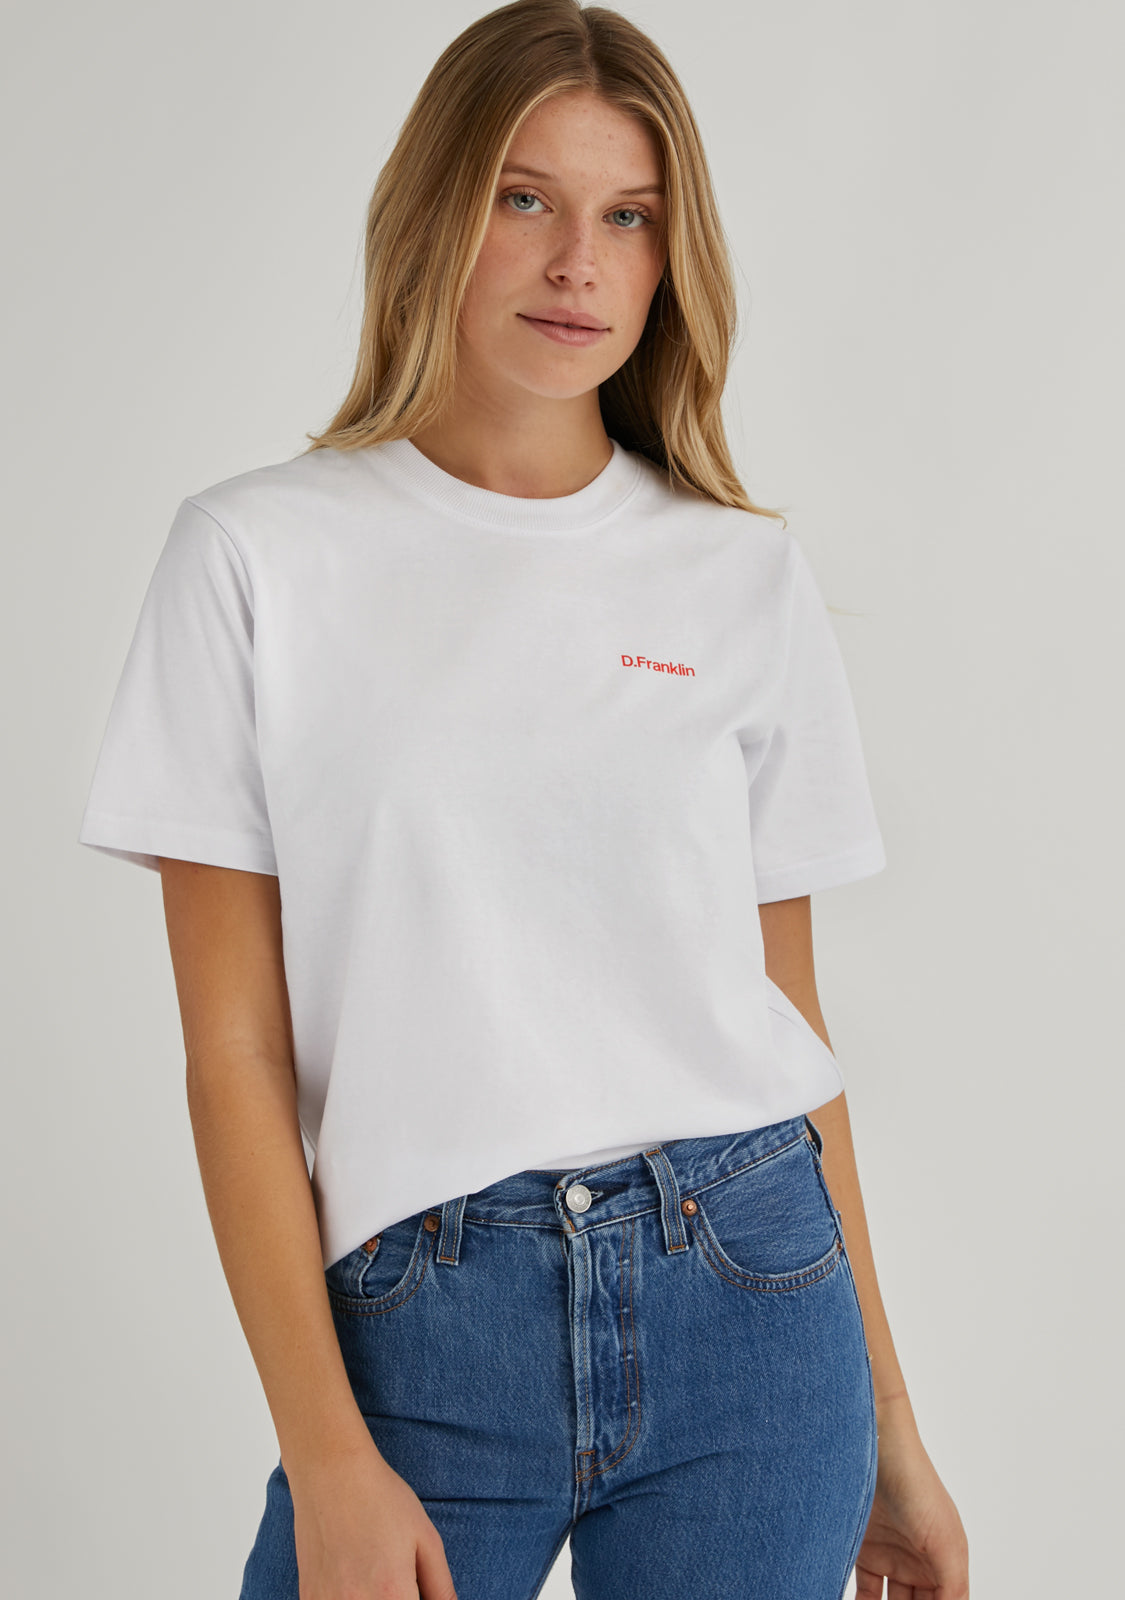 Social Club T-Shirt White / Orange